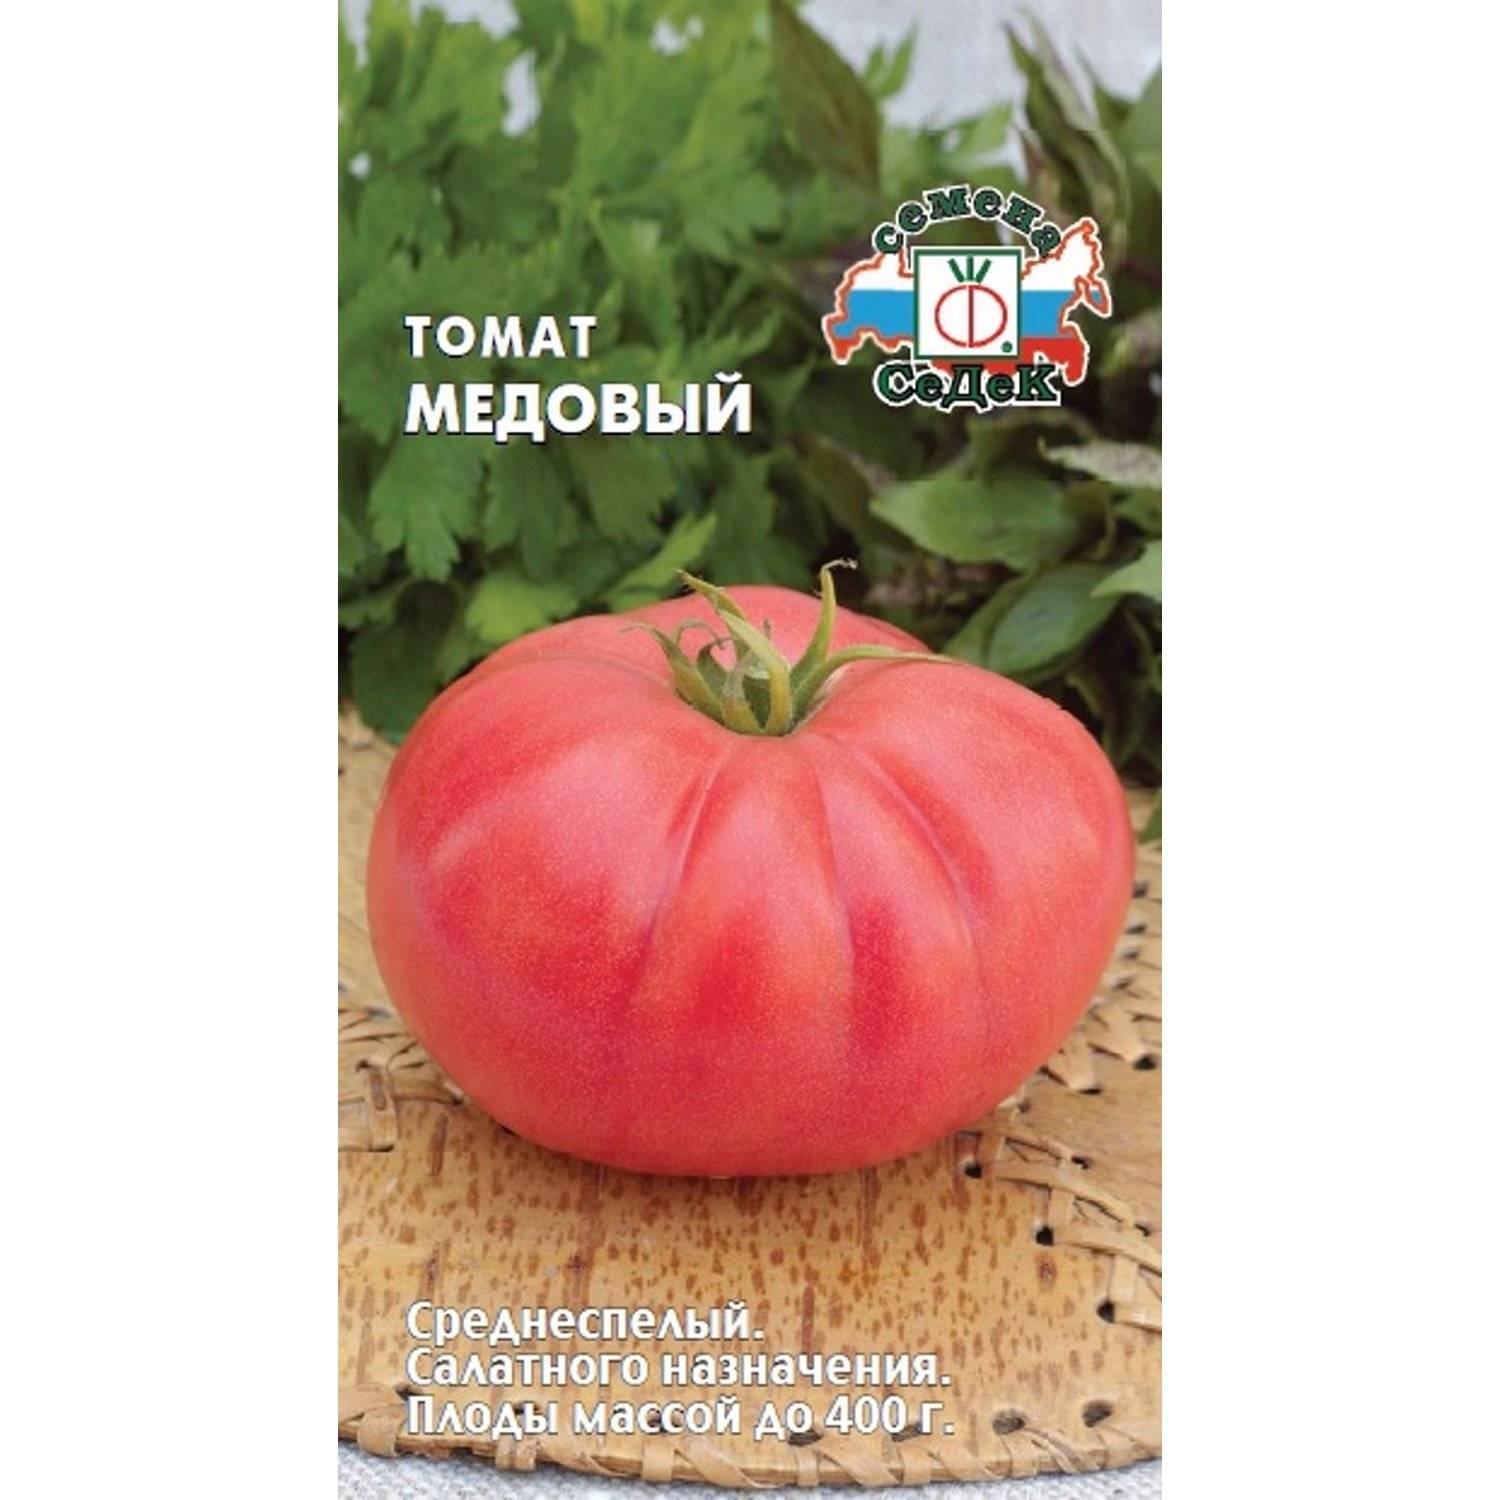 Описание, характеристика, посев на рассаду, подкормка, урожайность, фото, видео и самые распространенные болезни томатов сорта «медово сахарный».